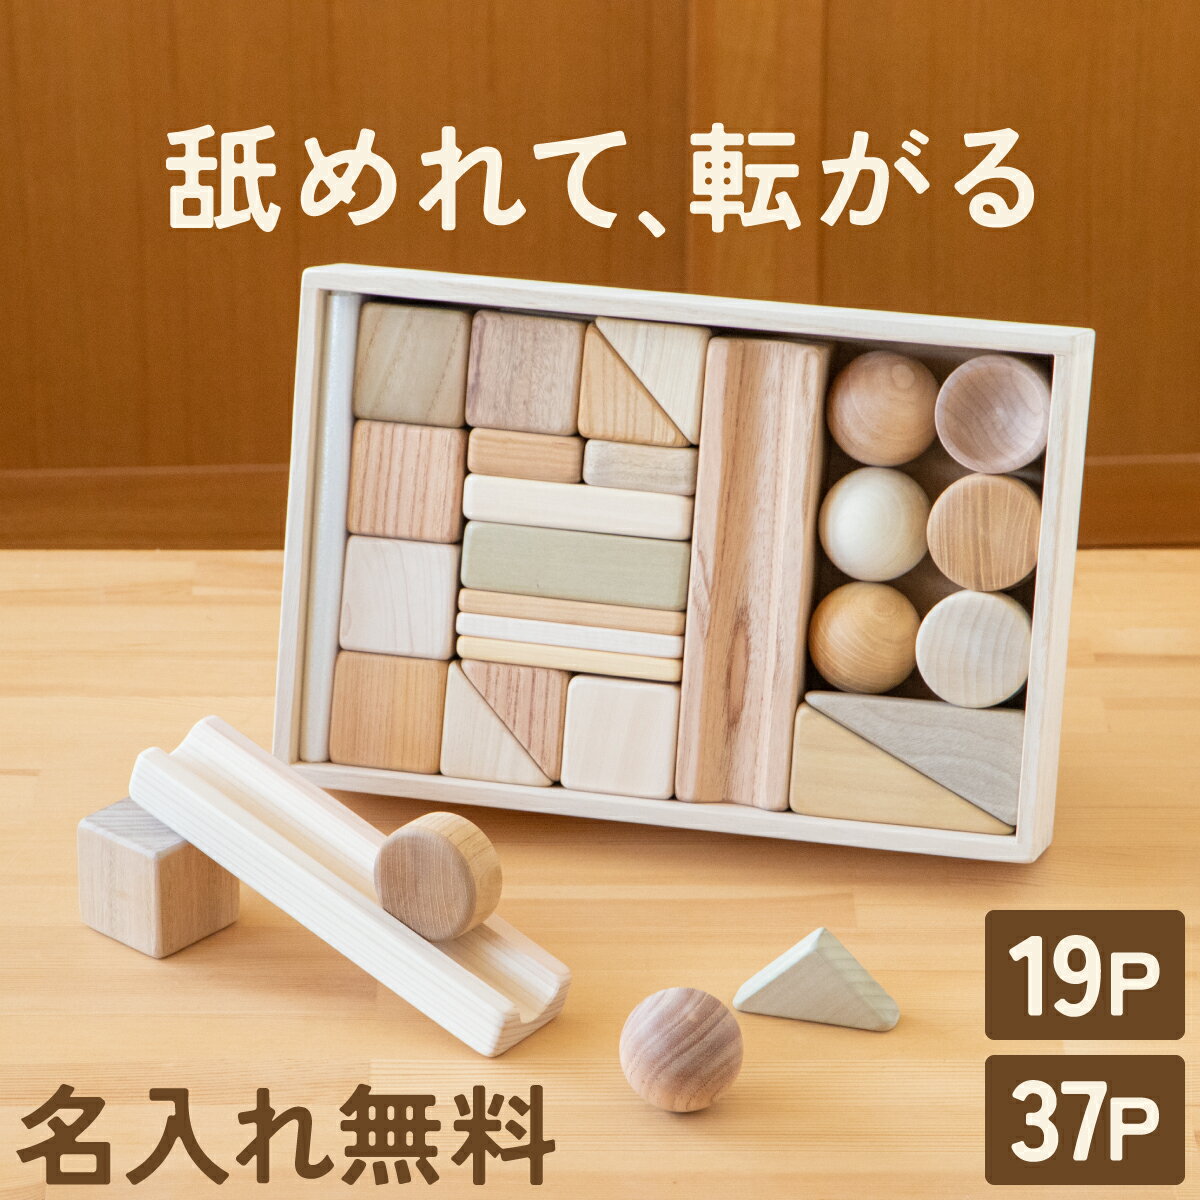 【名入れ・ラッピング無料】まあるい形の入った積み木【19P/37P】1歳 日本製 無塗装 赤ちゃん 木のおもちゃ 舐めても…